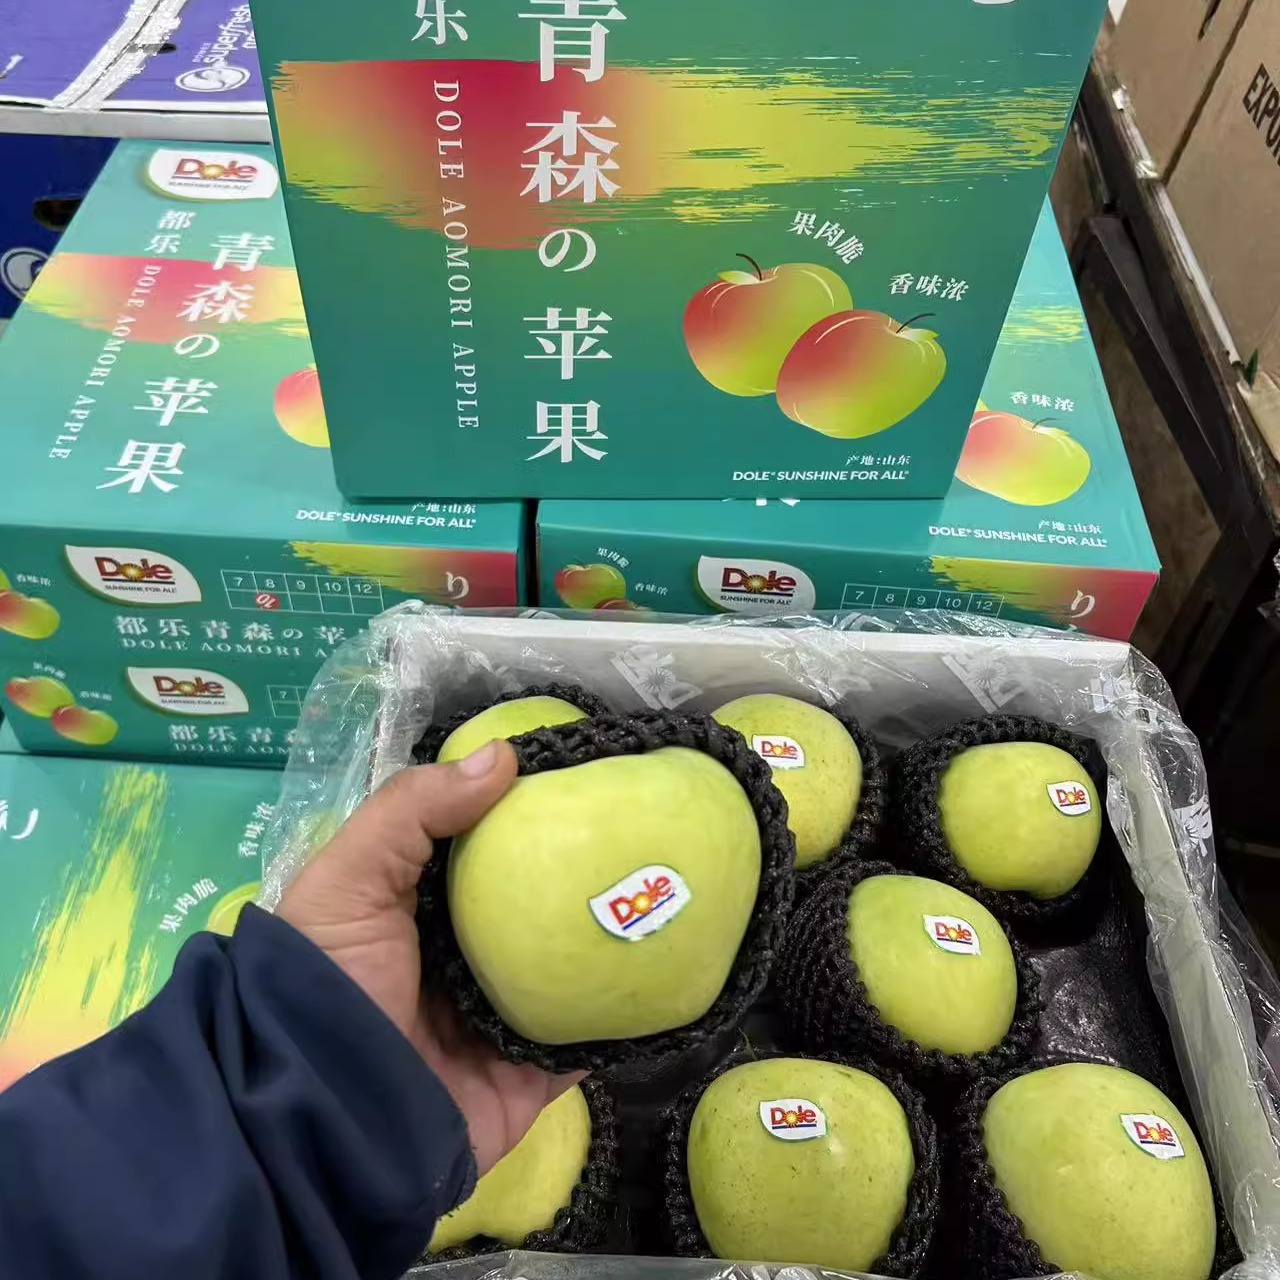 新鲜水果日本引种都乐dole青森水蜜桃王林苹果脆甜青苹果礼盒